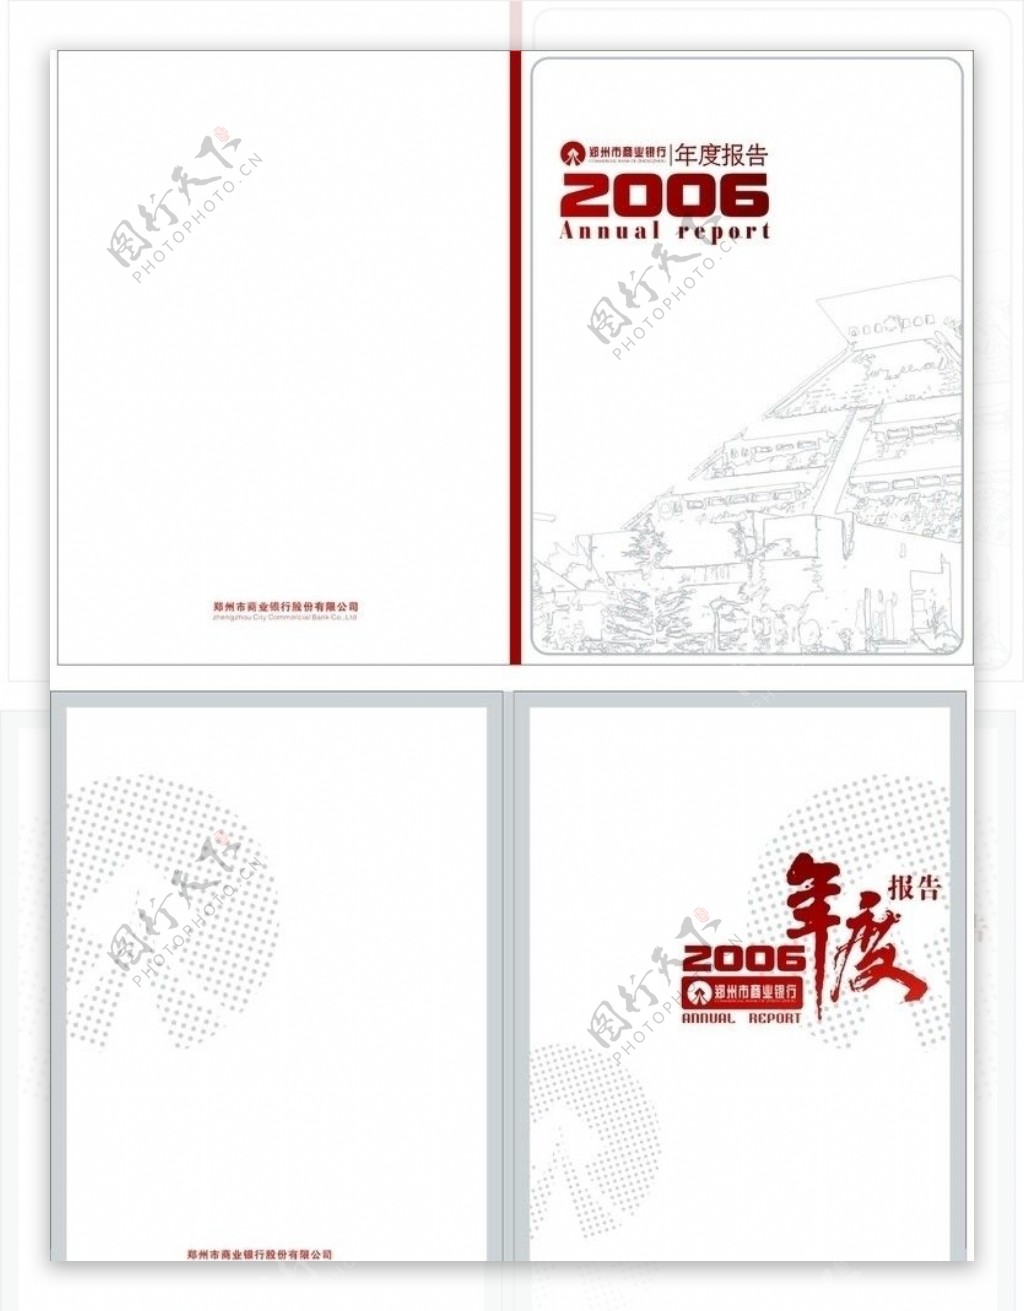 06商行年度报告封面设计两方案